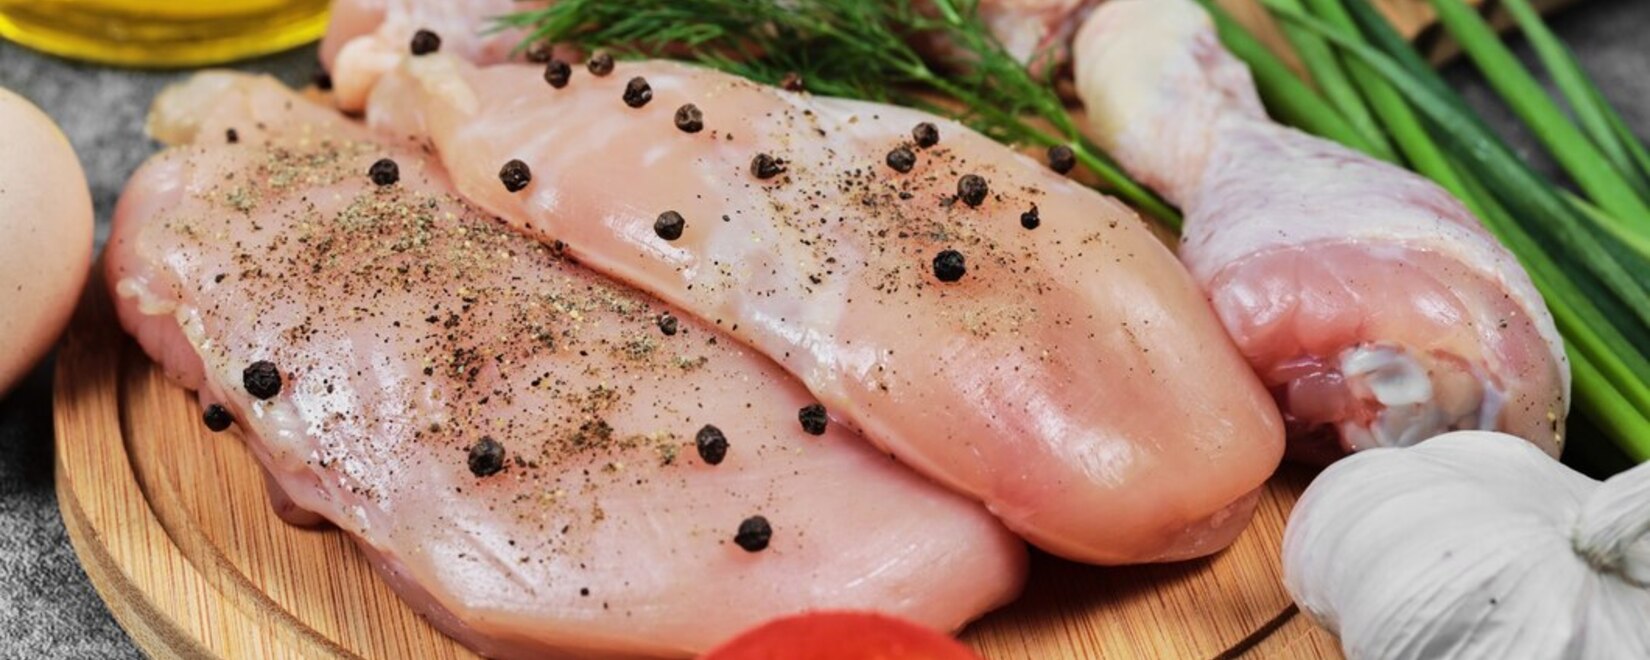 В России установлена квота на ввоз куриного мяса, вызвавшая недовольство в отрасли, сообщает Национальный союз птицеводов.